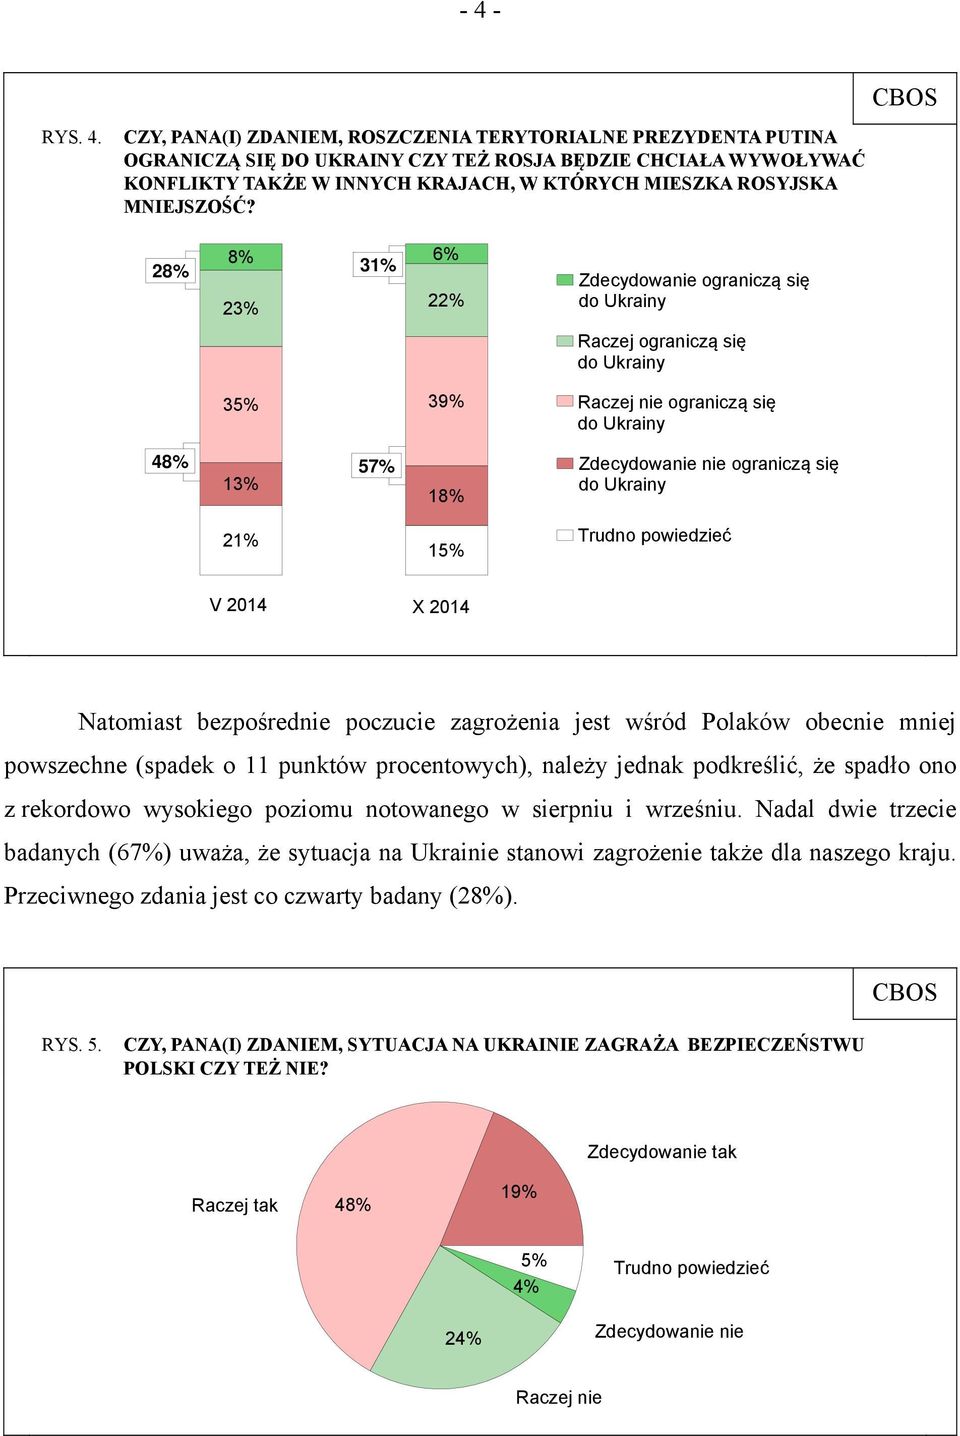 28% 8% 31% 6% 23% 22% 35% 39% Zdecydowanie ograniczą się do Ukrainy Raczej ograniczą się do Ukrainy Raczej nie ograniczą się do Ukrainy 48% 57% 13% 21% 18% 15% Zdecydowanie nie ograniczą się do